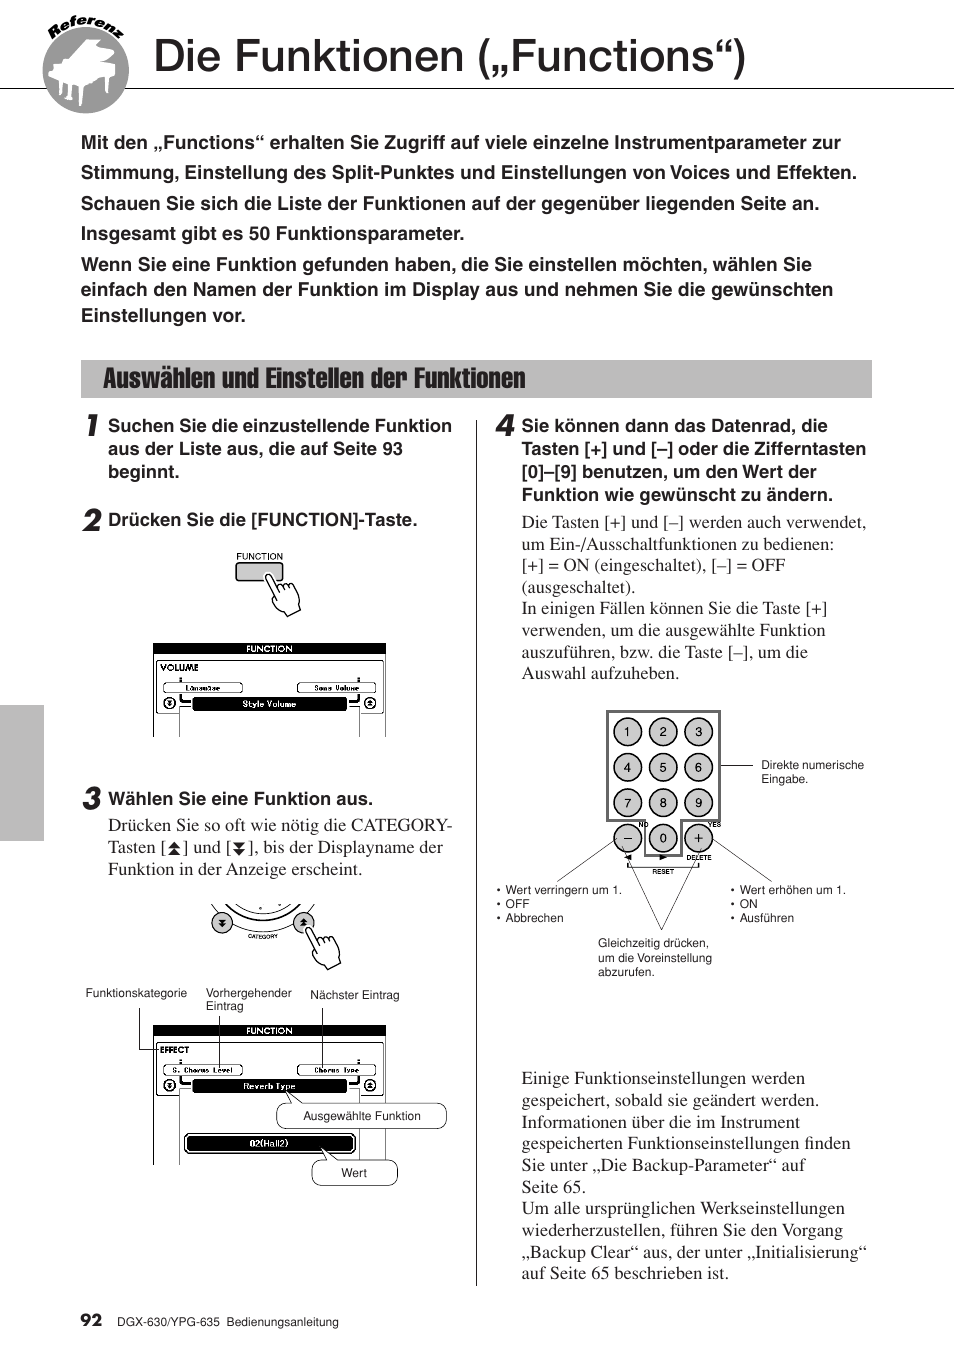 Die funktionen („functions“), Auswählen und einstellen der funktionen | Yamaha DGX-630 Benutzerhandbuch | Seite 92 / 160